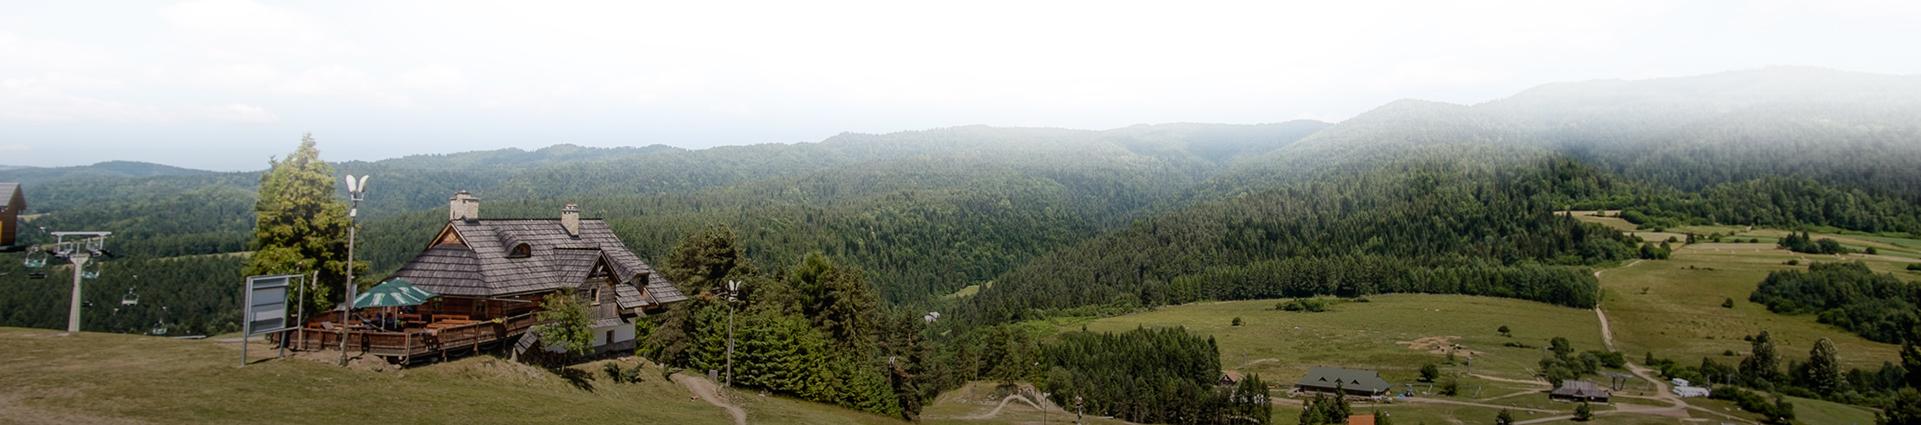 panorama na lasy, góry